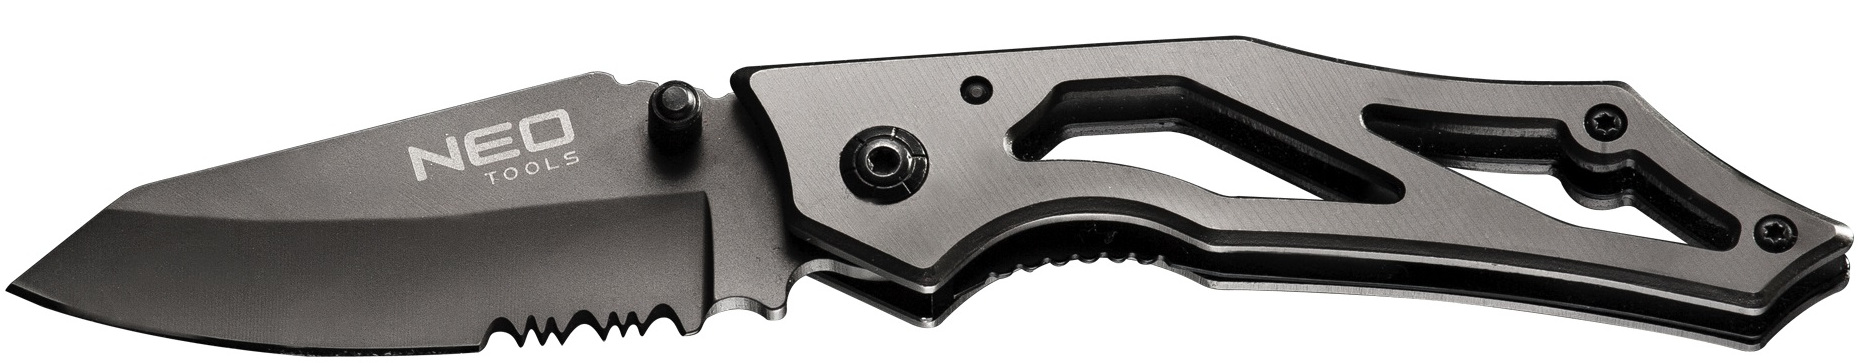 Нож нескладной Neo Tools 63-025 в Львове